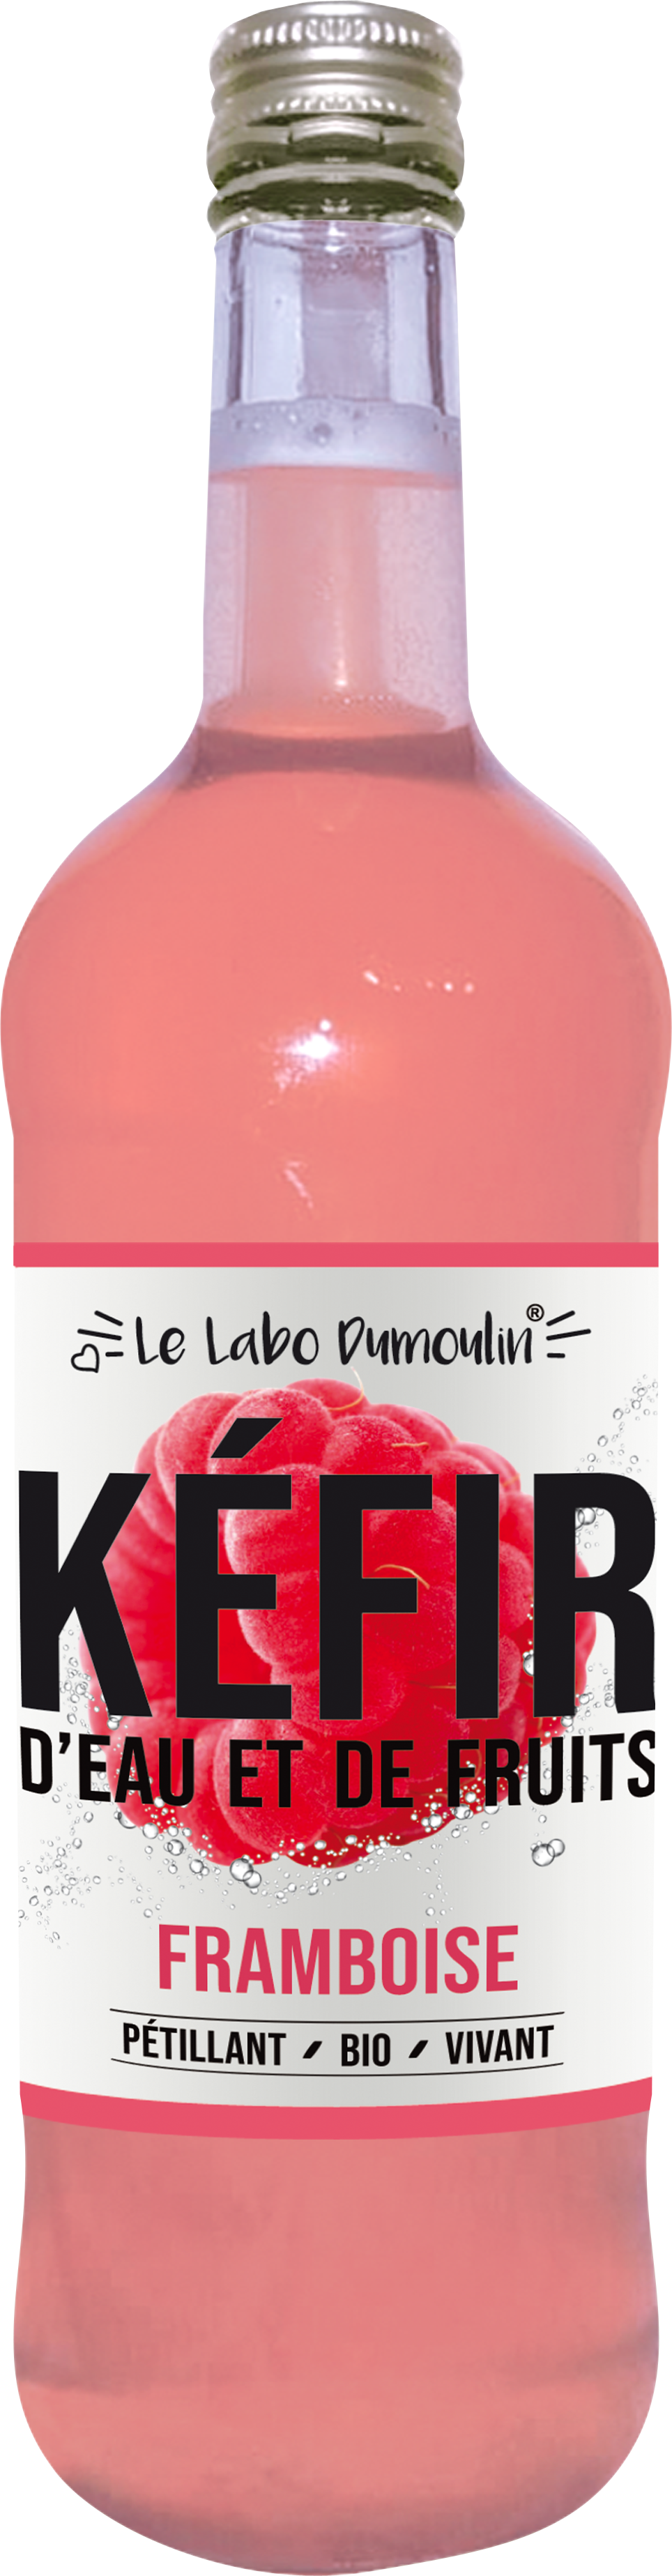 Le Labo Dumoulin -- Kéfir frais bio (framboise) - 75 cl x 8